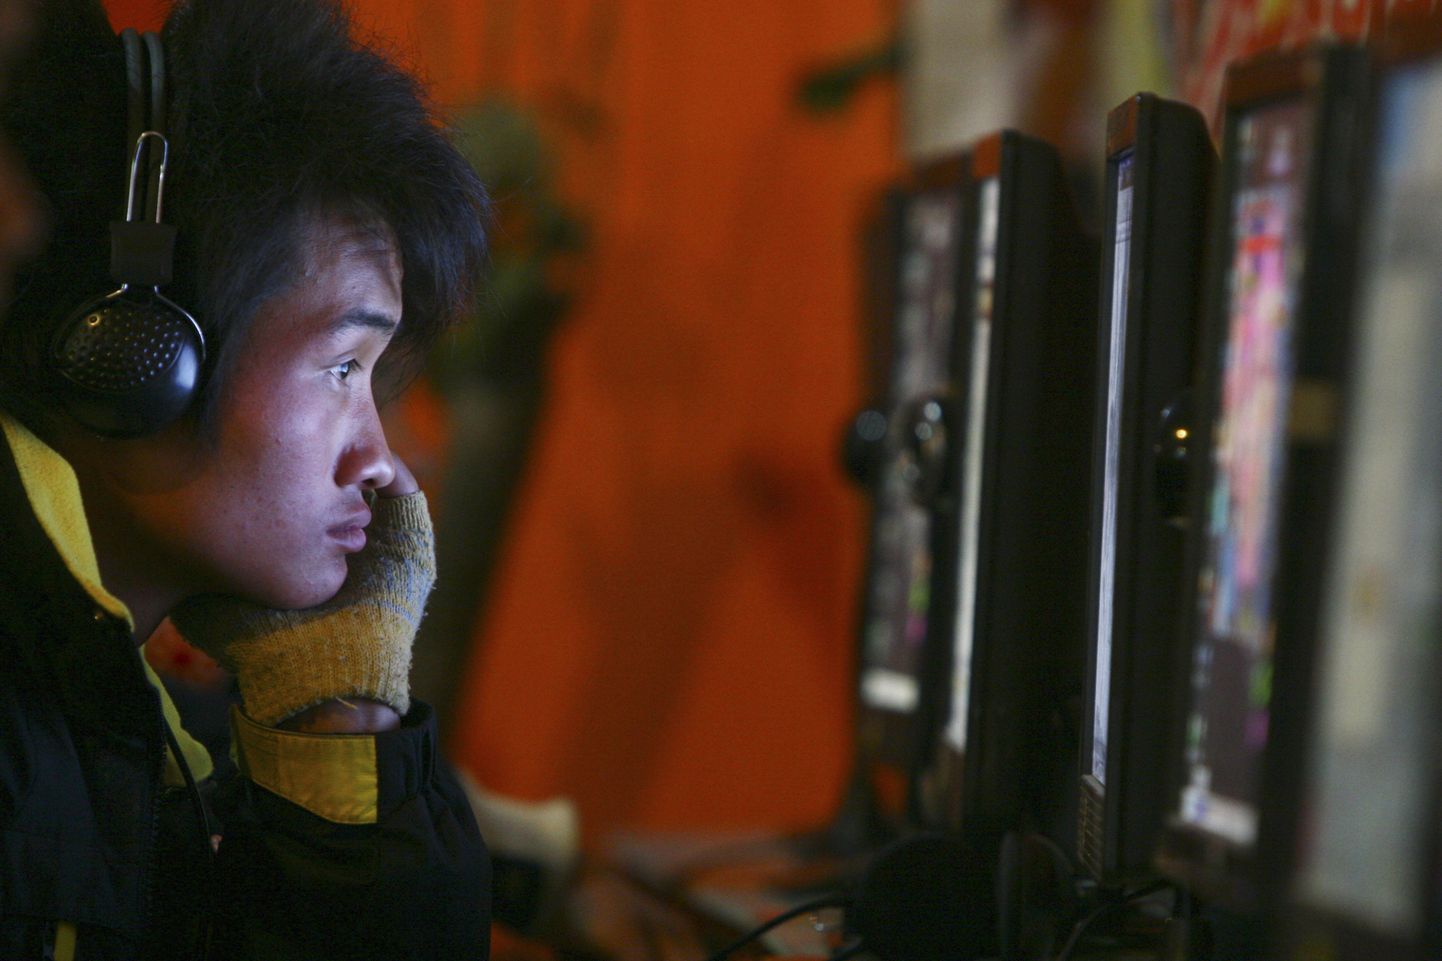 Китайская разведка пытается сблизиться с государственными чиновниками и специалистами через интернет.